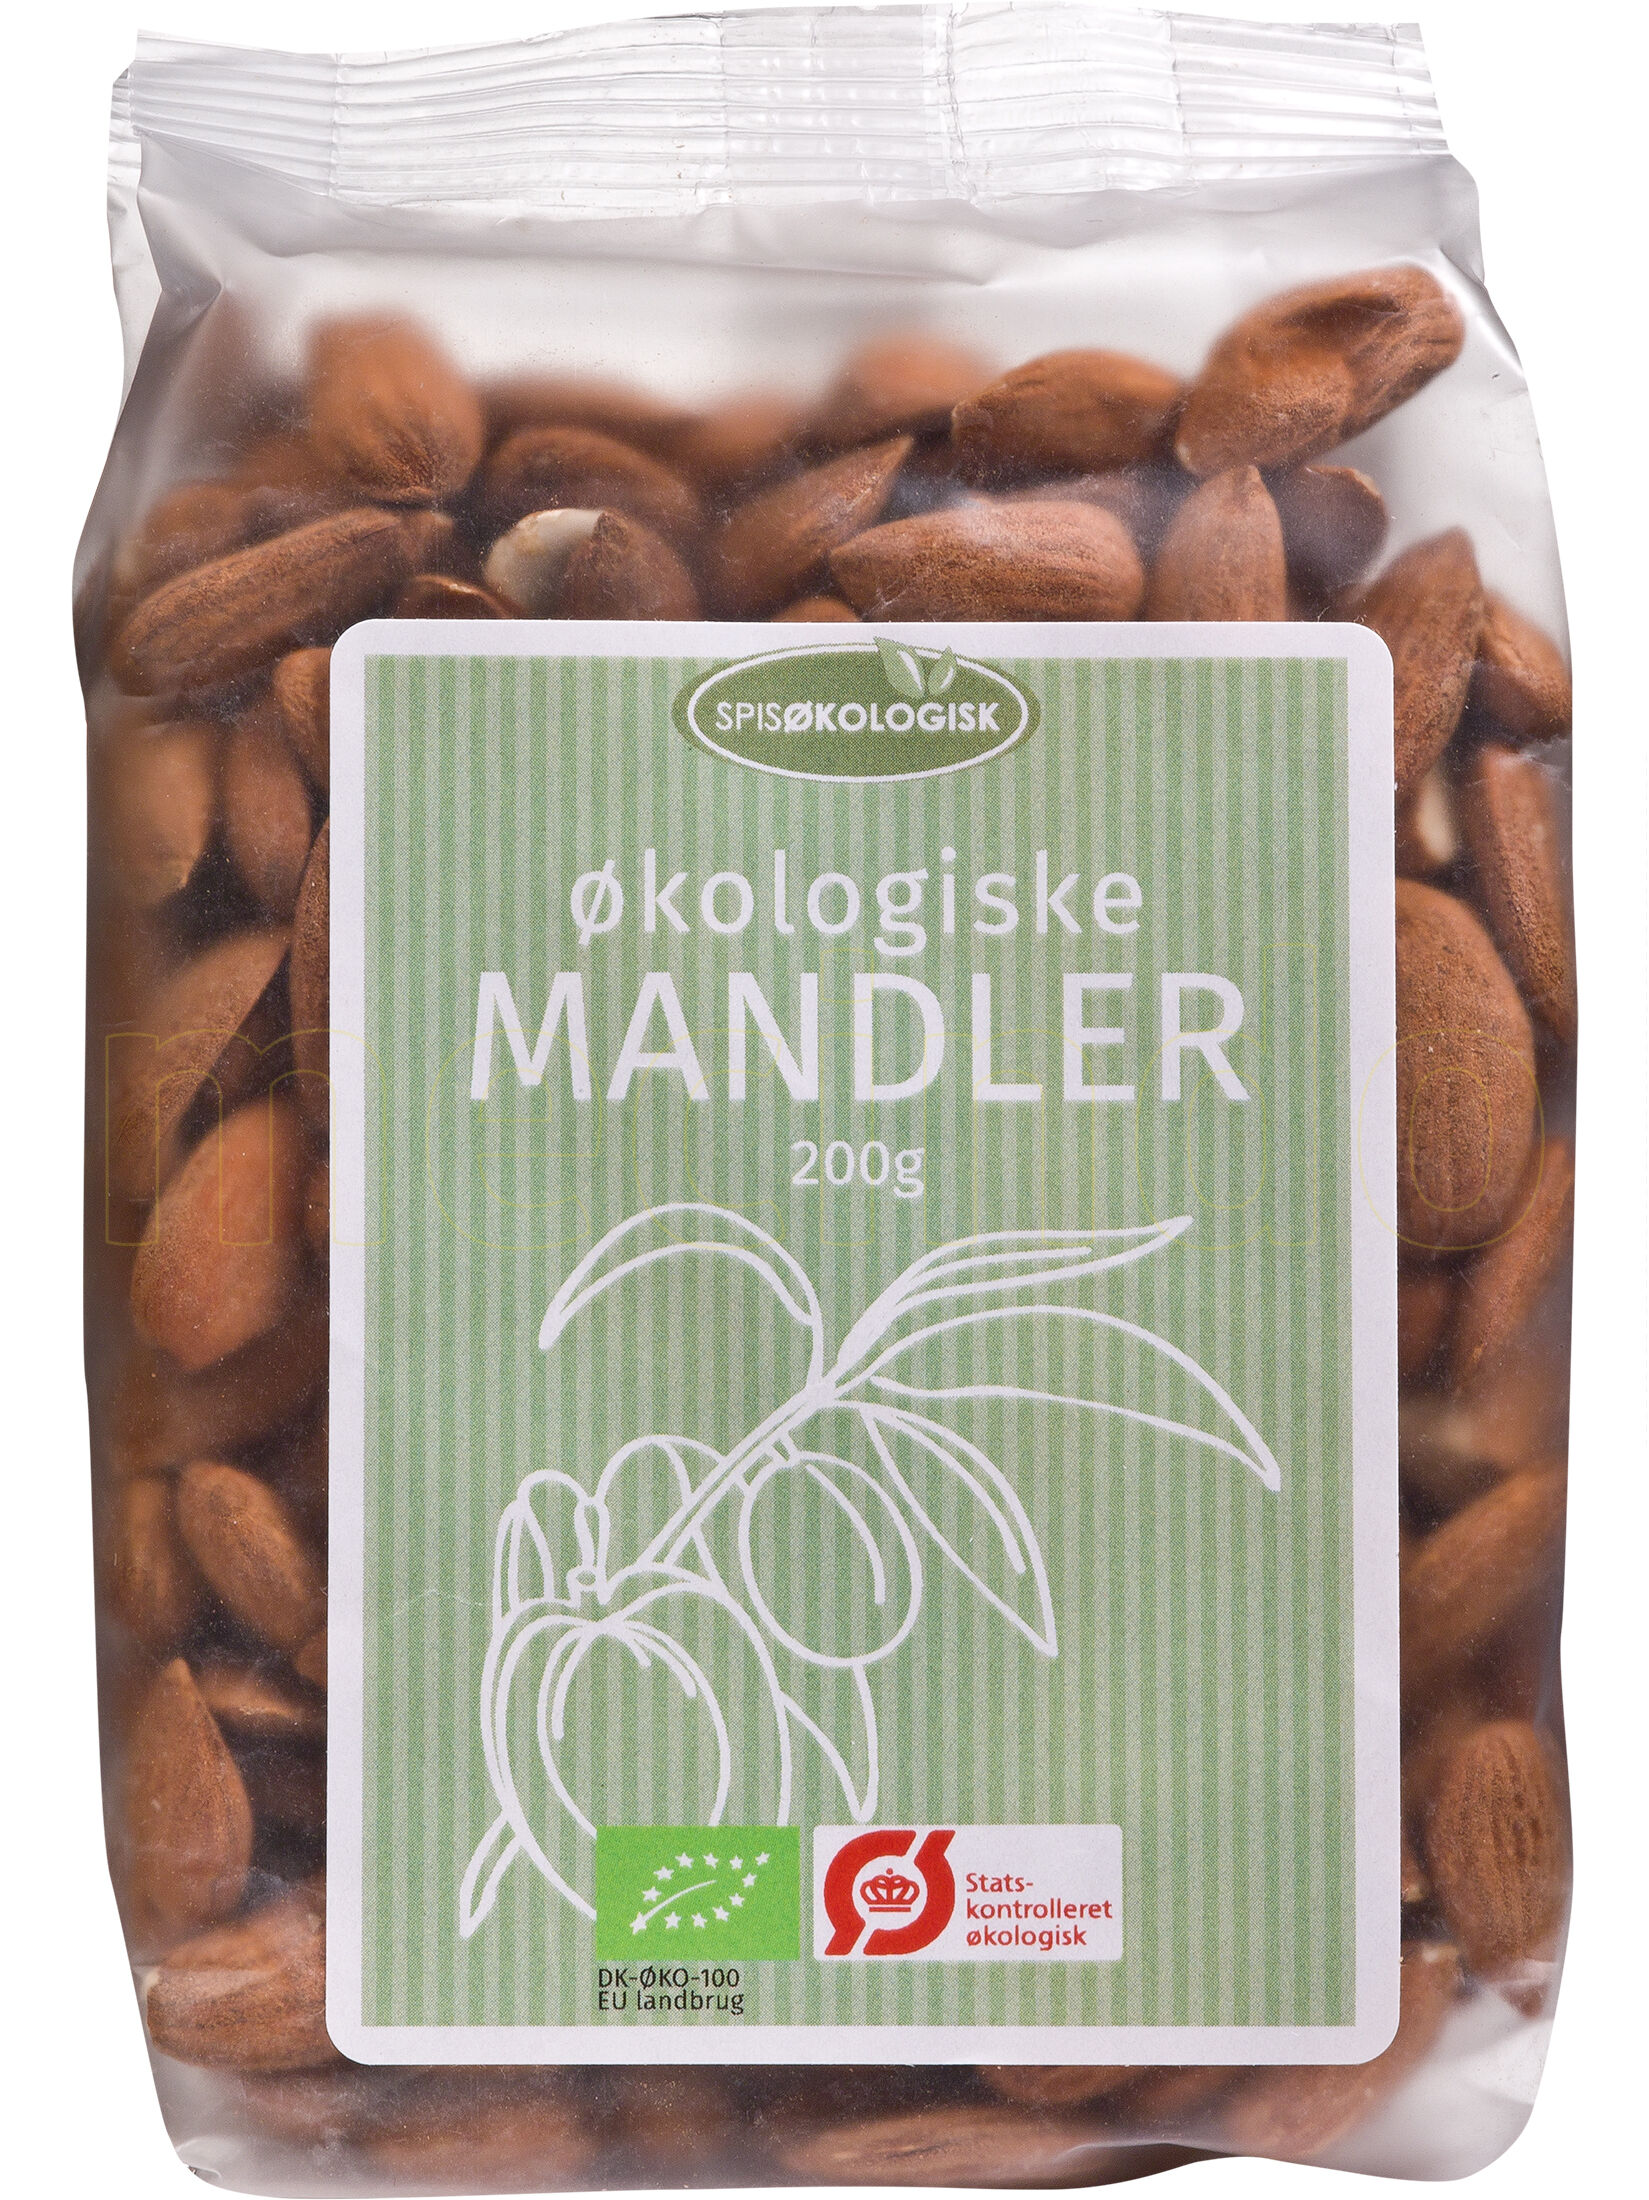 Spis Økologisk Mandler Ø Spis Økologisk - 200 g